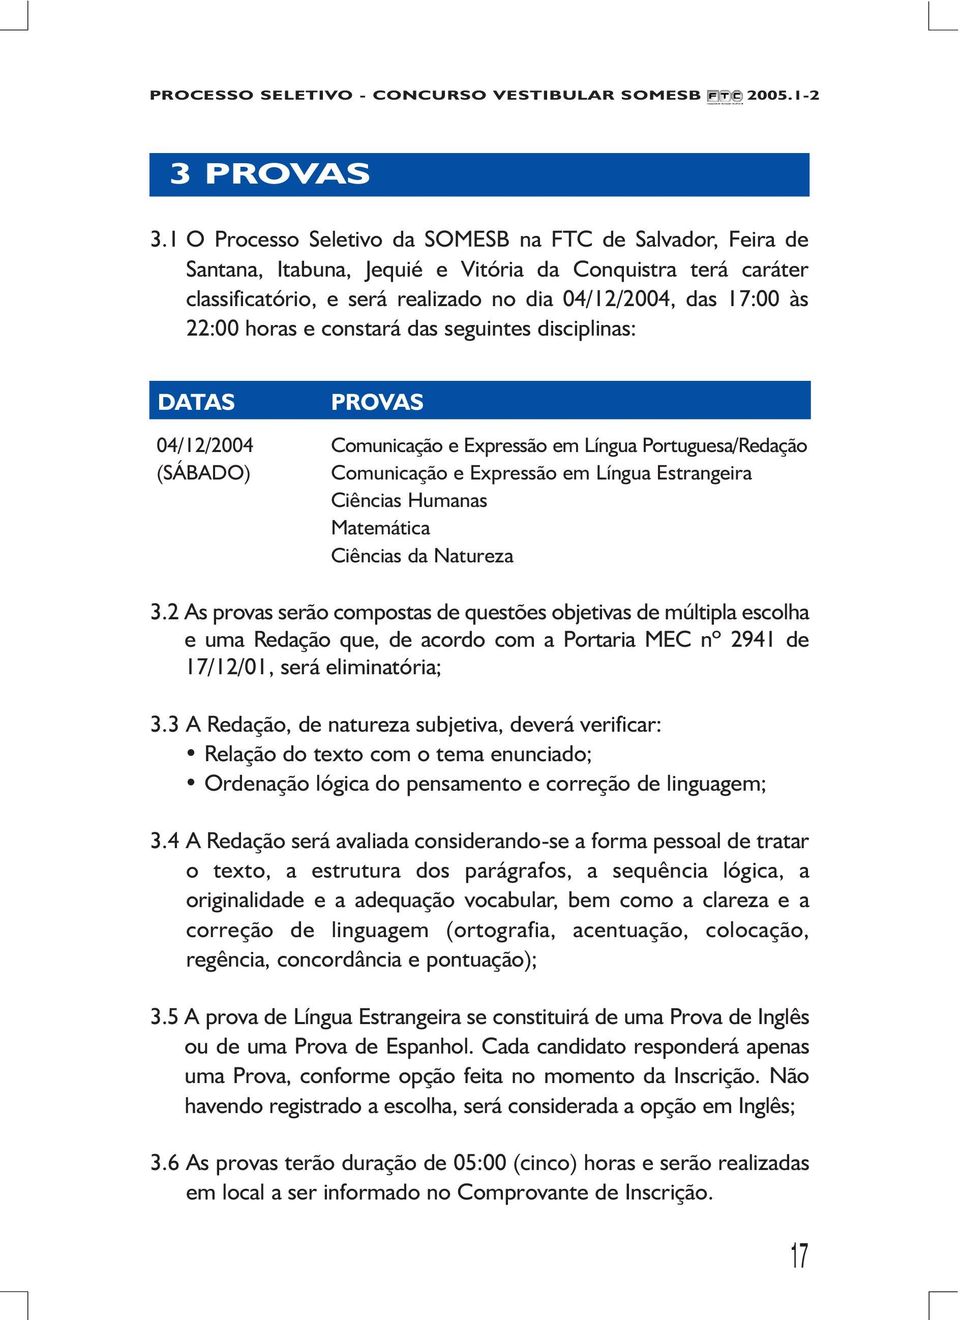 horas e constará das seguintes disciplinas: DATAS PROVAS 04/12/2004 Comunicação e Expressão em Língua Portuguesa/Redação (SÁBADO) Comunicação e Expressão em Língua Estrangeira Ciências Humanas